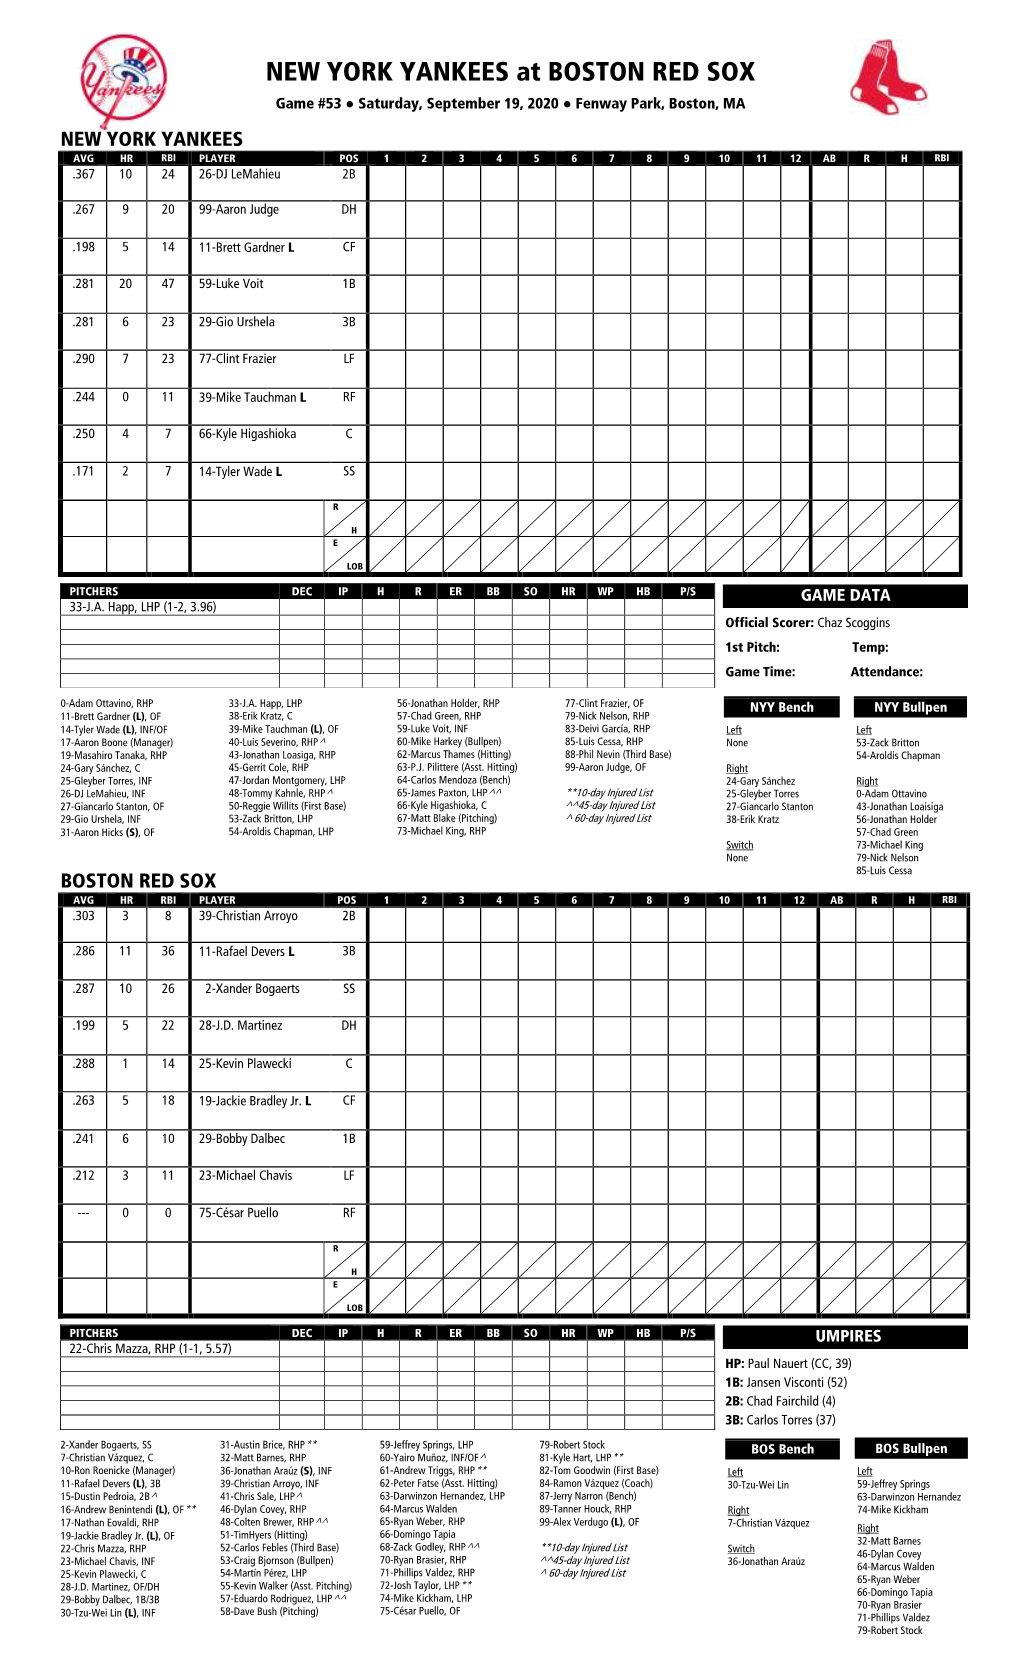 Lineup Sheet